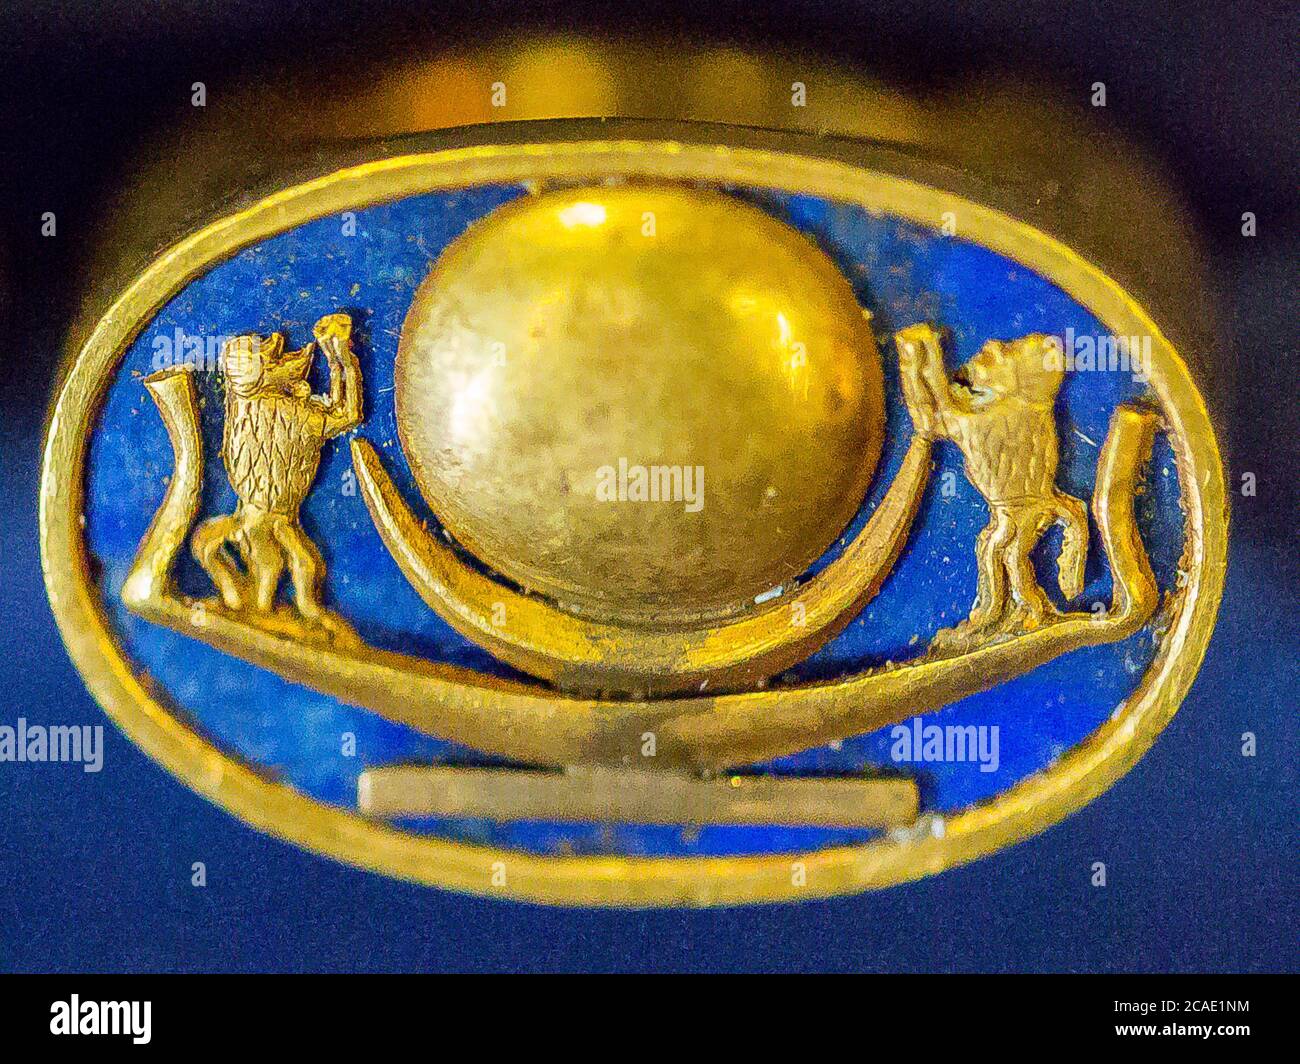 Egypte, le Caire, bijoux Toutankhamon, de sa tombe à Louxor : bague avec une barque solaire, adorée par les singes (hamadryas). Banque D'Images